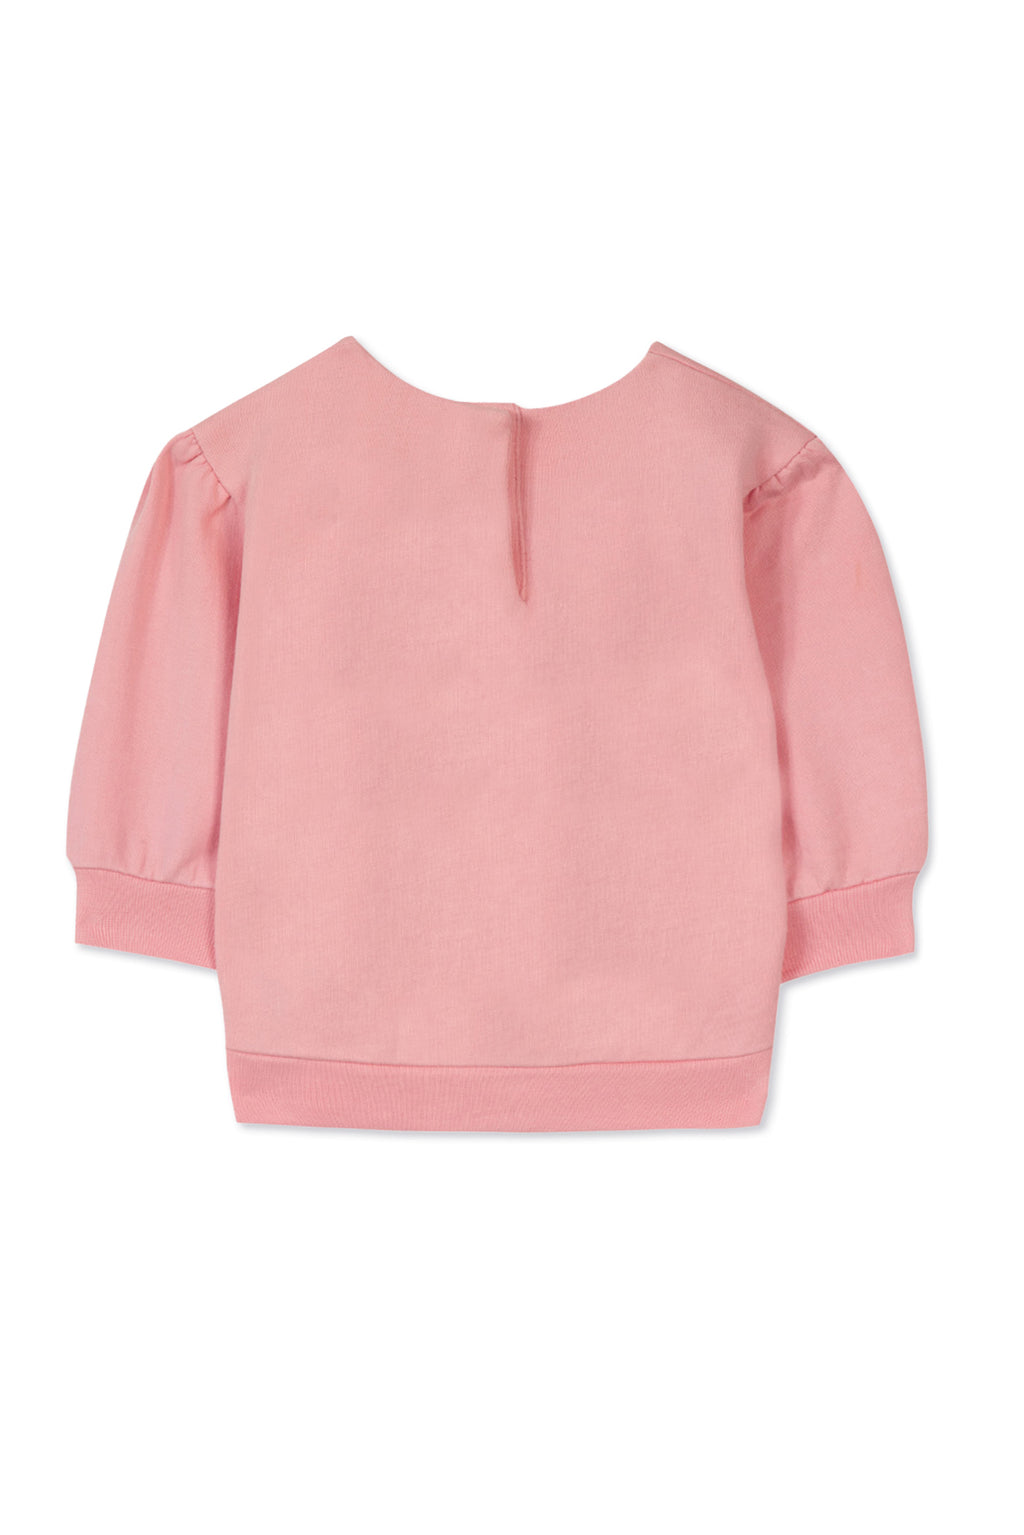 Sweatshirt - Pink embroidery